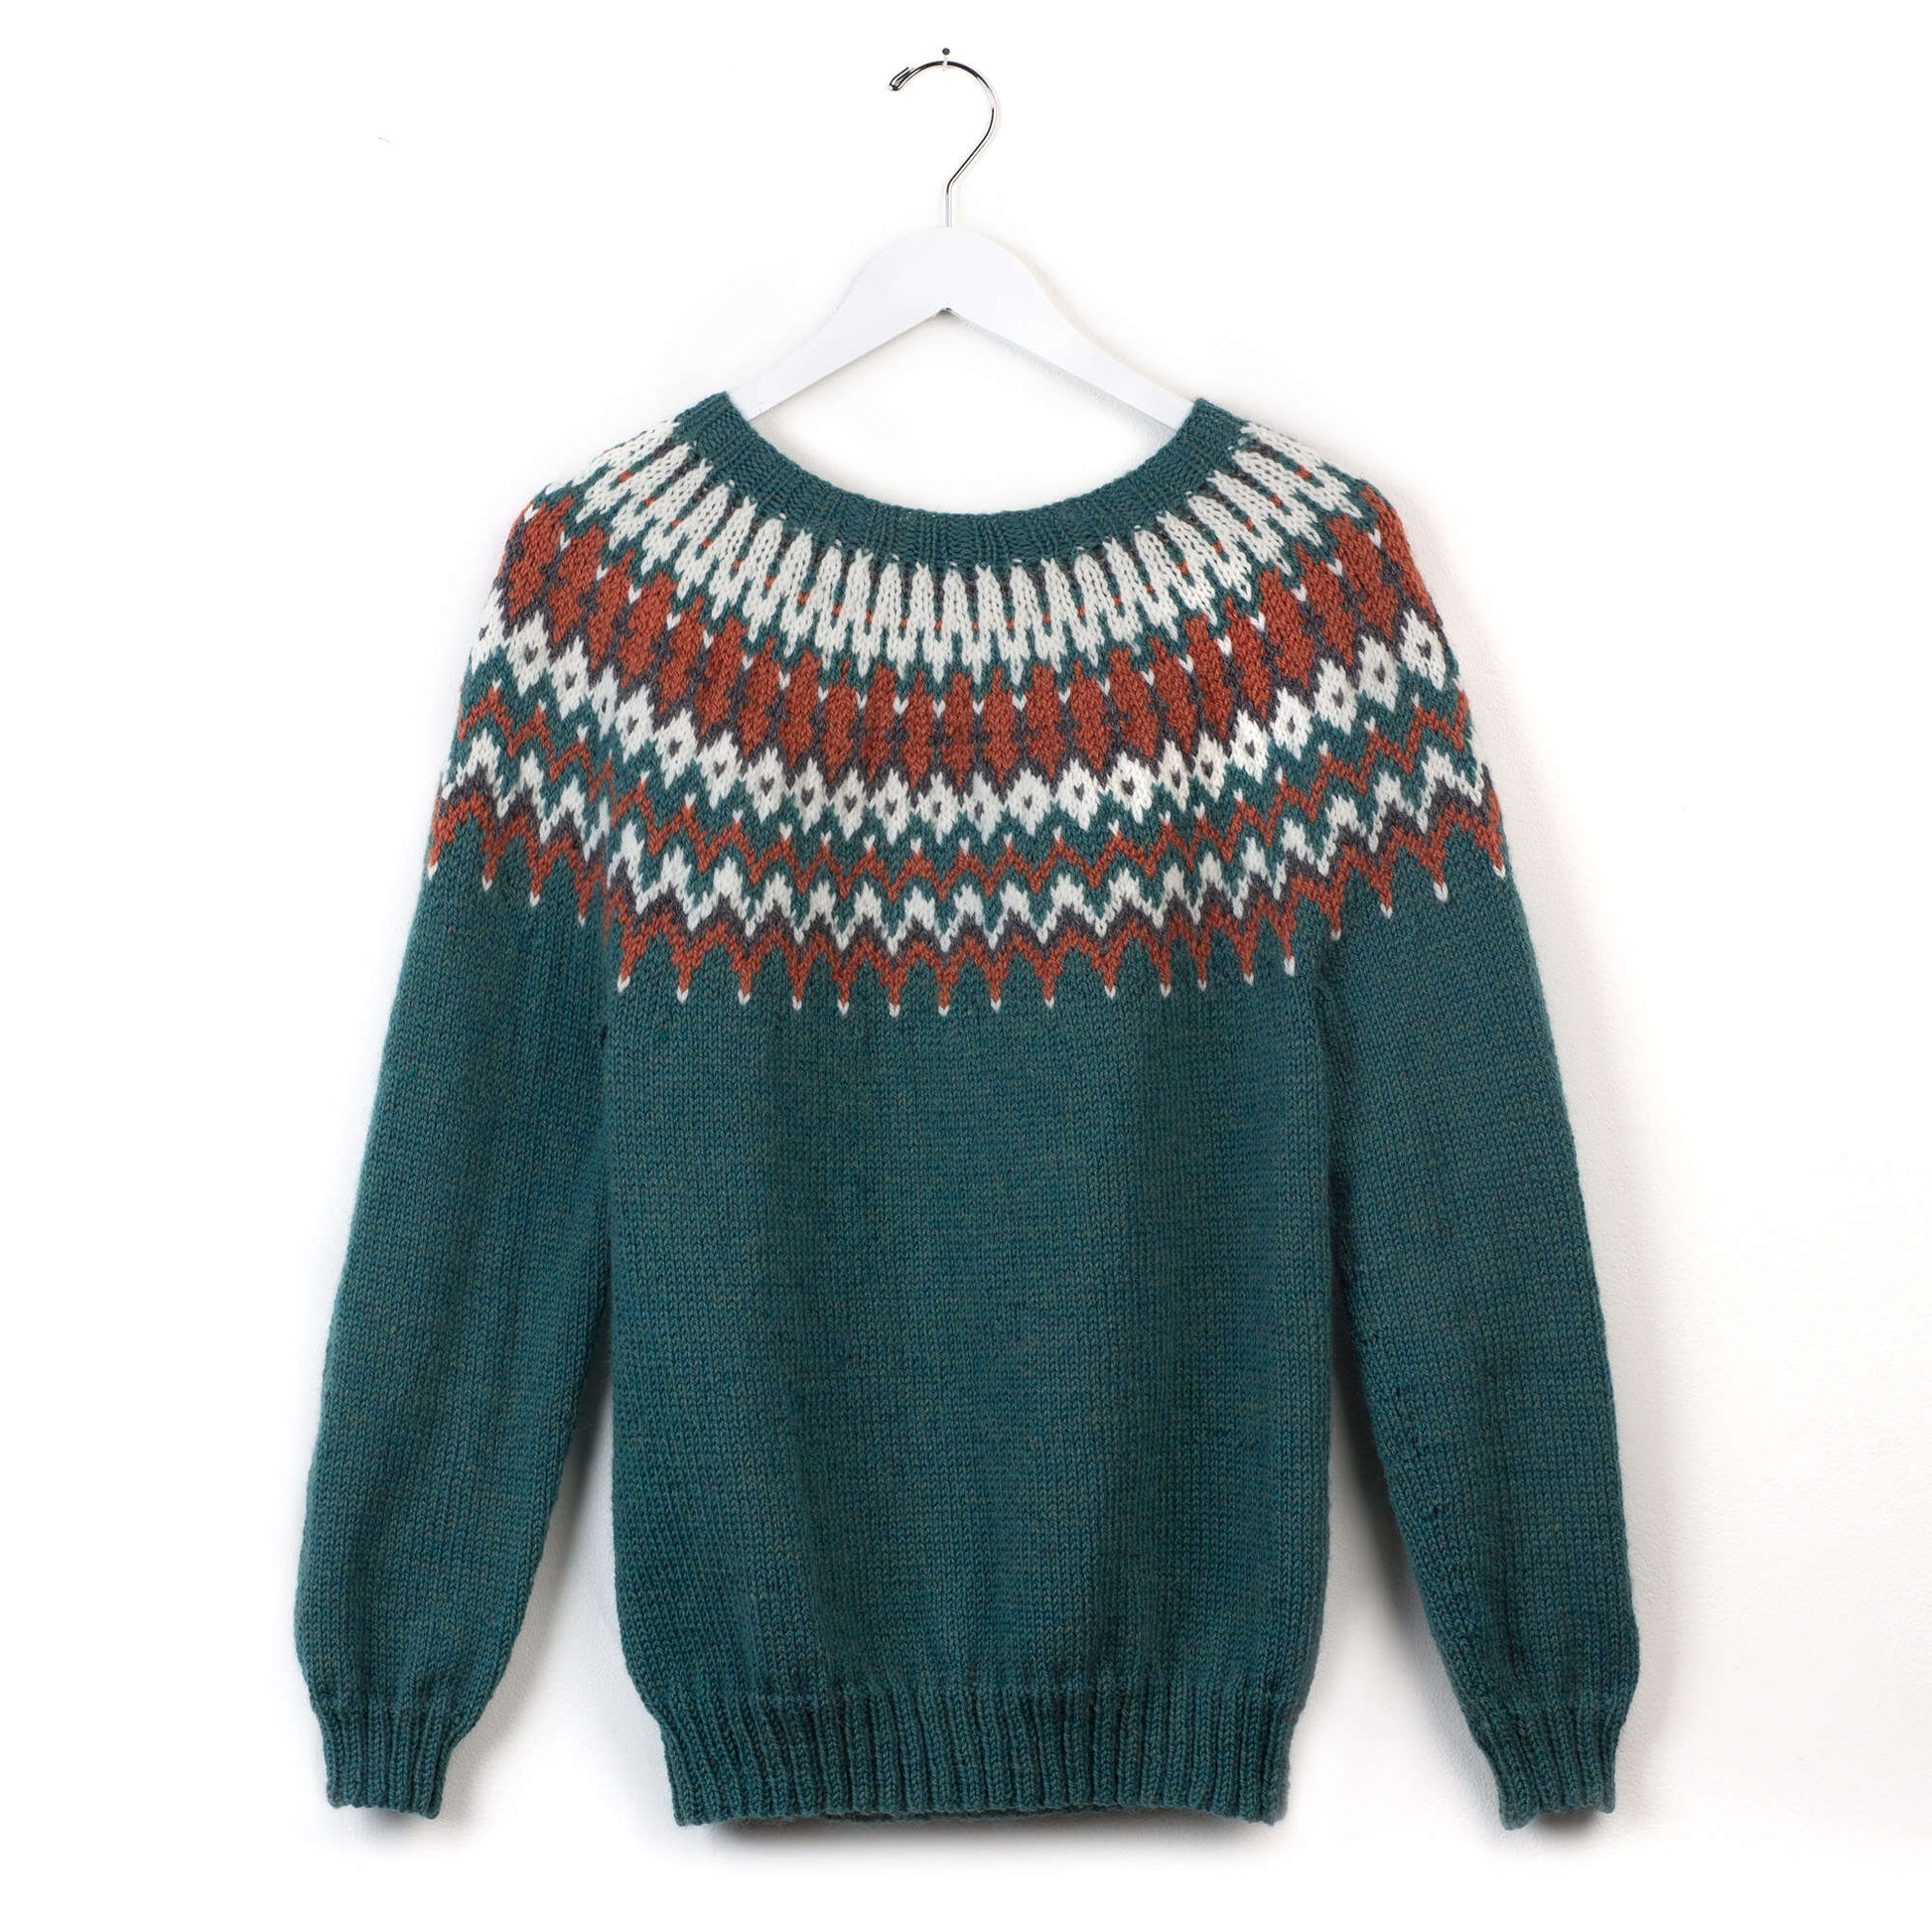 Free Patons His & Hers Knit Yoke Sweaters Pattern